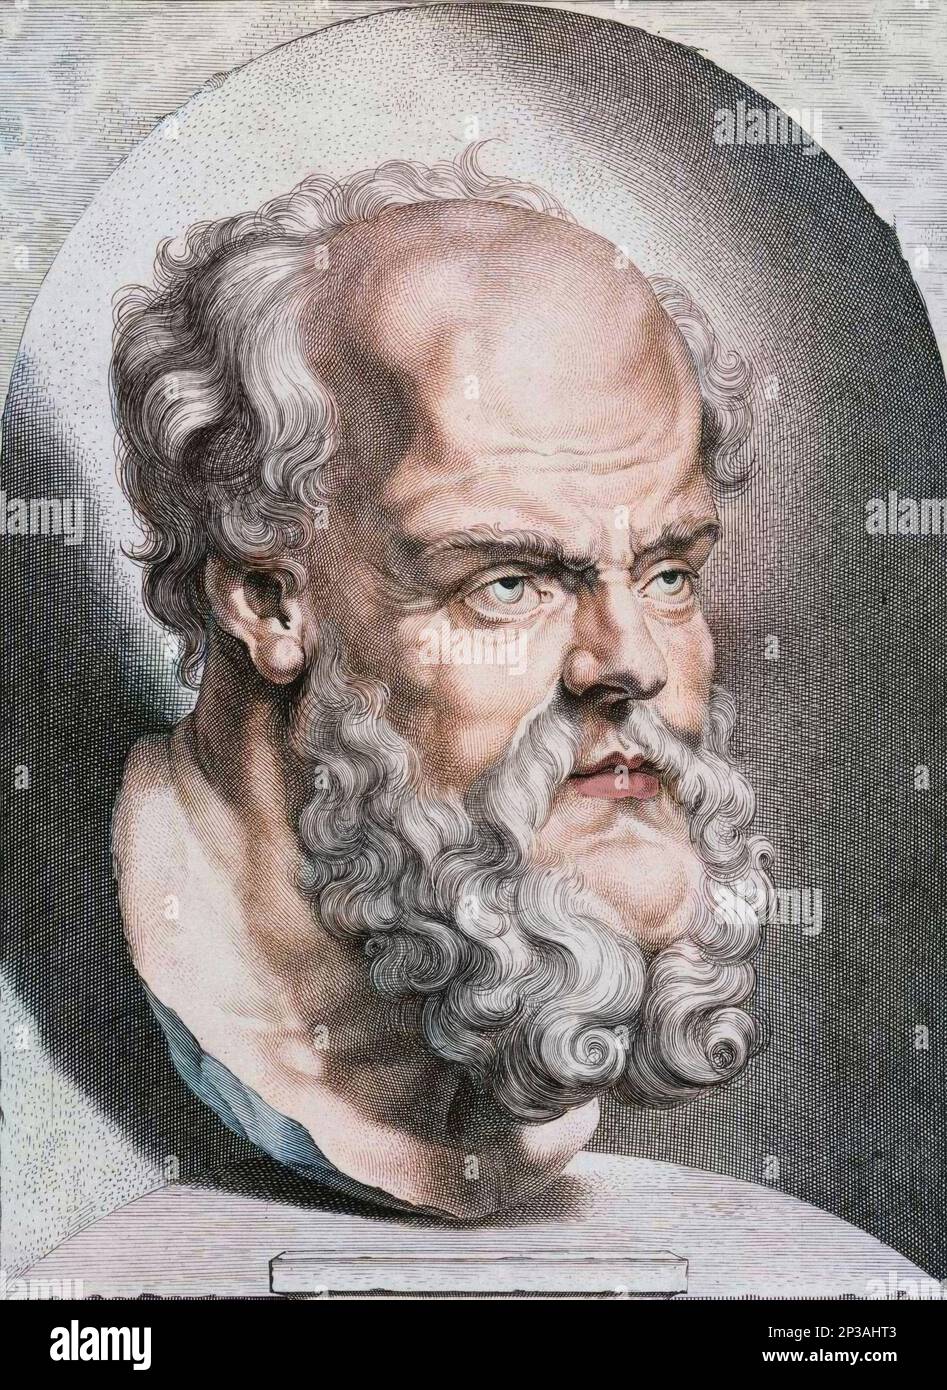 Buste de Socrate philosophe de la Grece Antique (5eme siecle AV JC.). Gravure couleur du 17eme siecle. Foto Stock